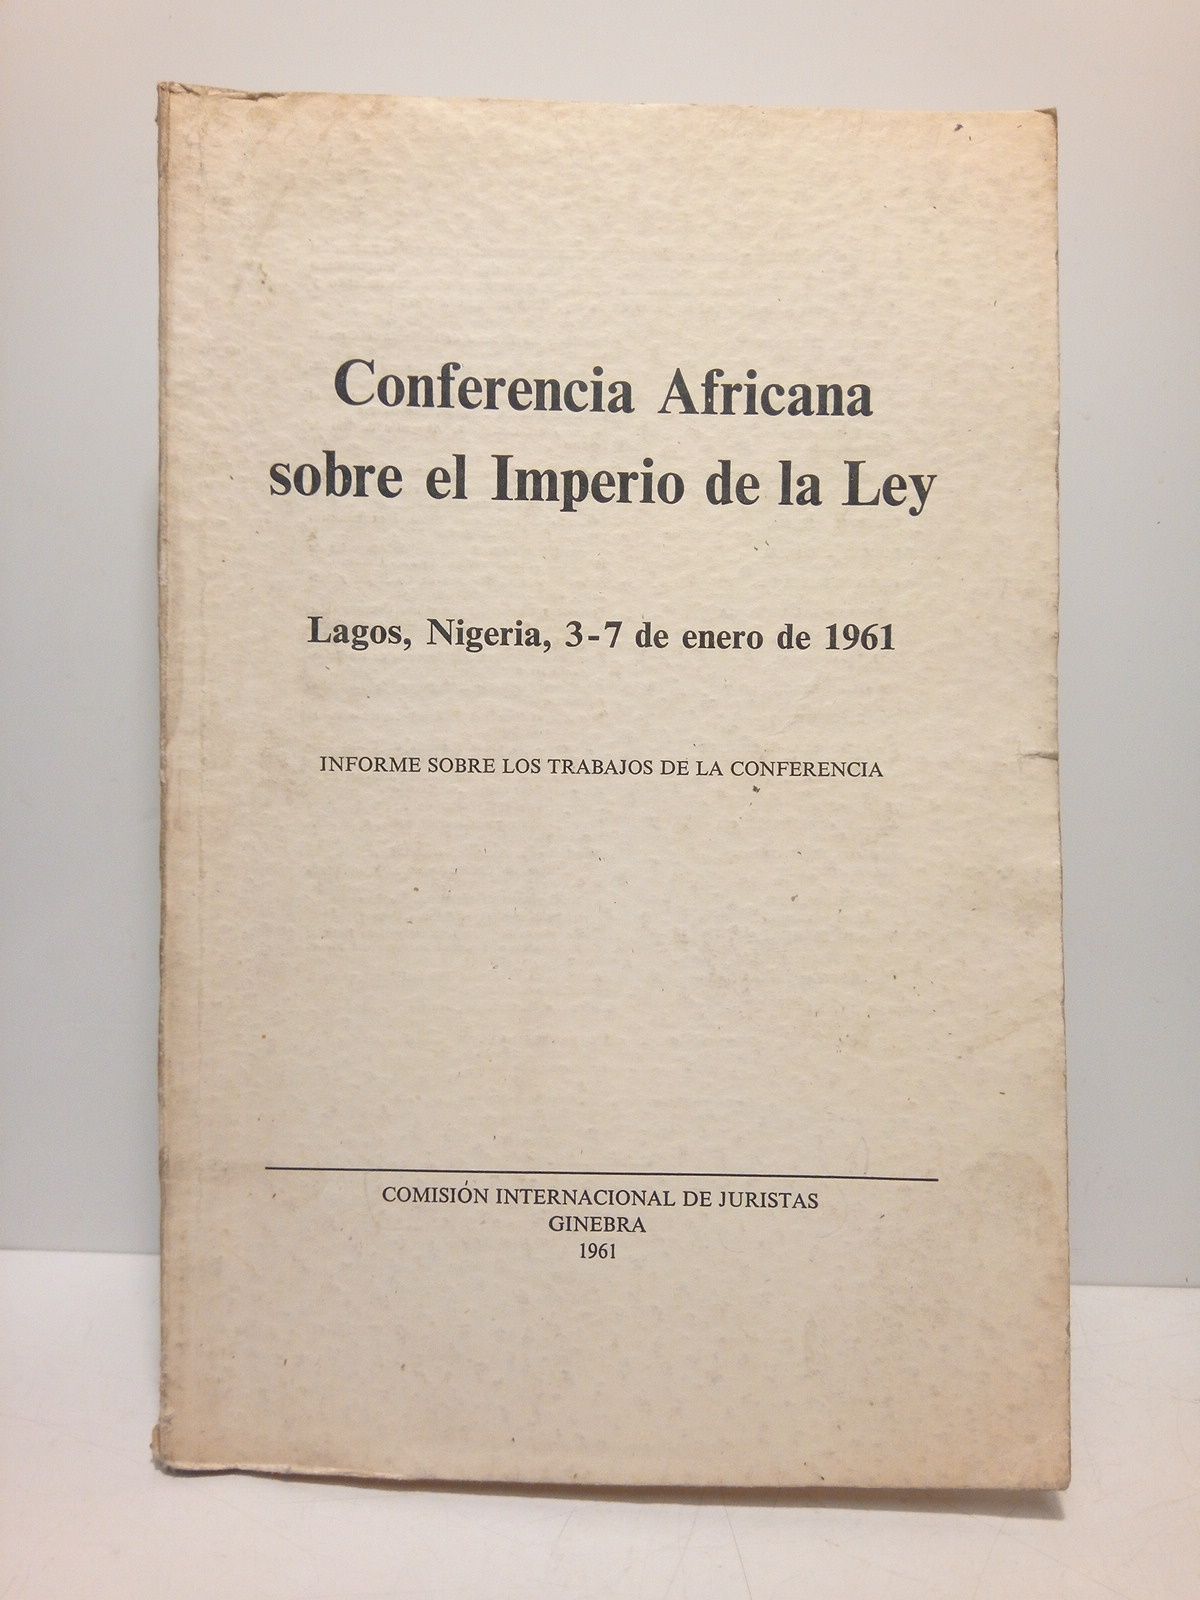 COMISION INTERNACIONAL DE JURISTAS (Edita) - Conferencia africana sobre el Imperio de la Ley. Lagos, Nigeria, 3-7 de enero de 1961: Informe sobre los trabajos de la Conferencia